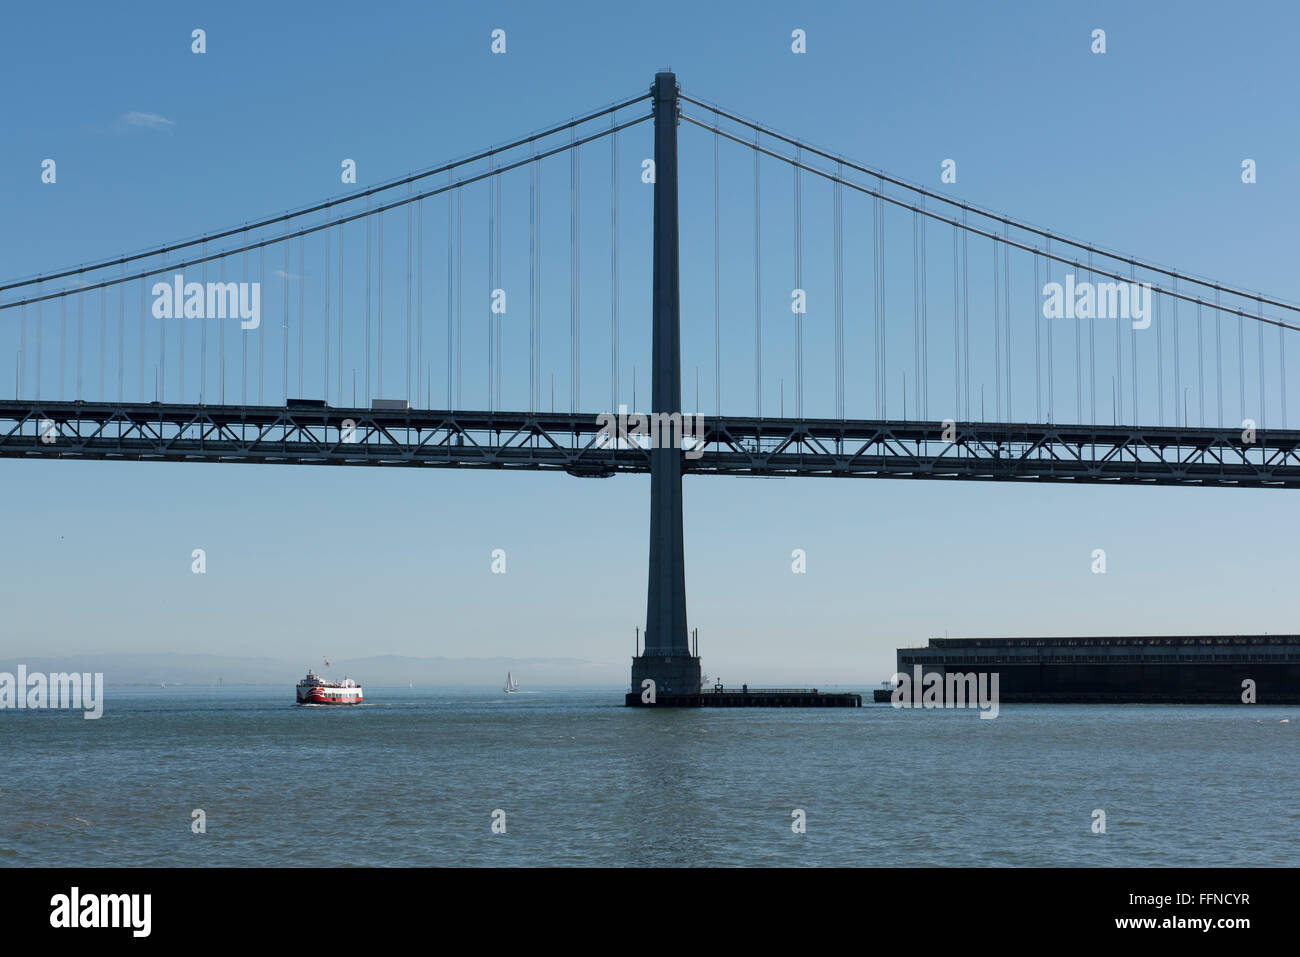 The Bay Bridge, San Francisco, California, USA Stock Photo